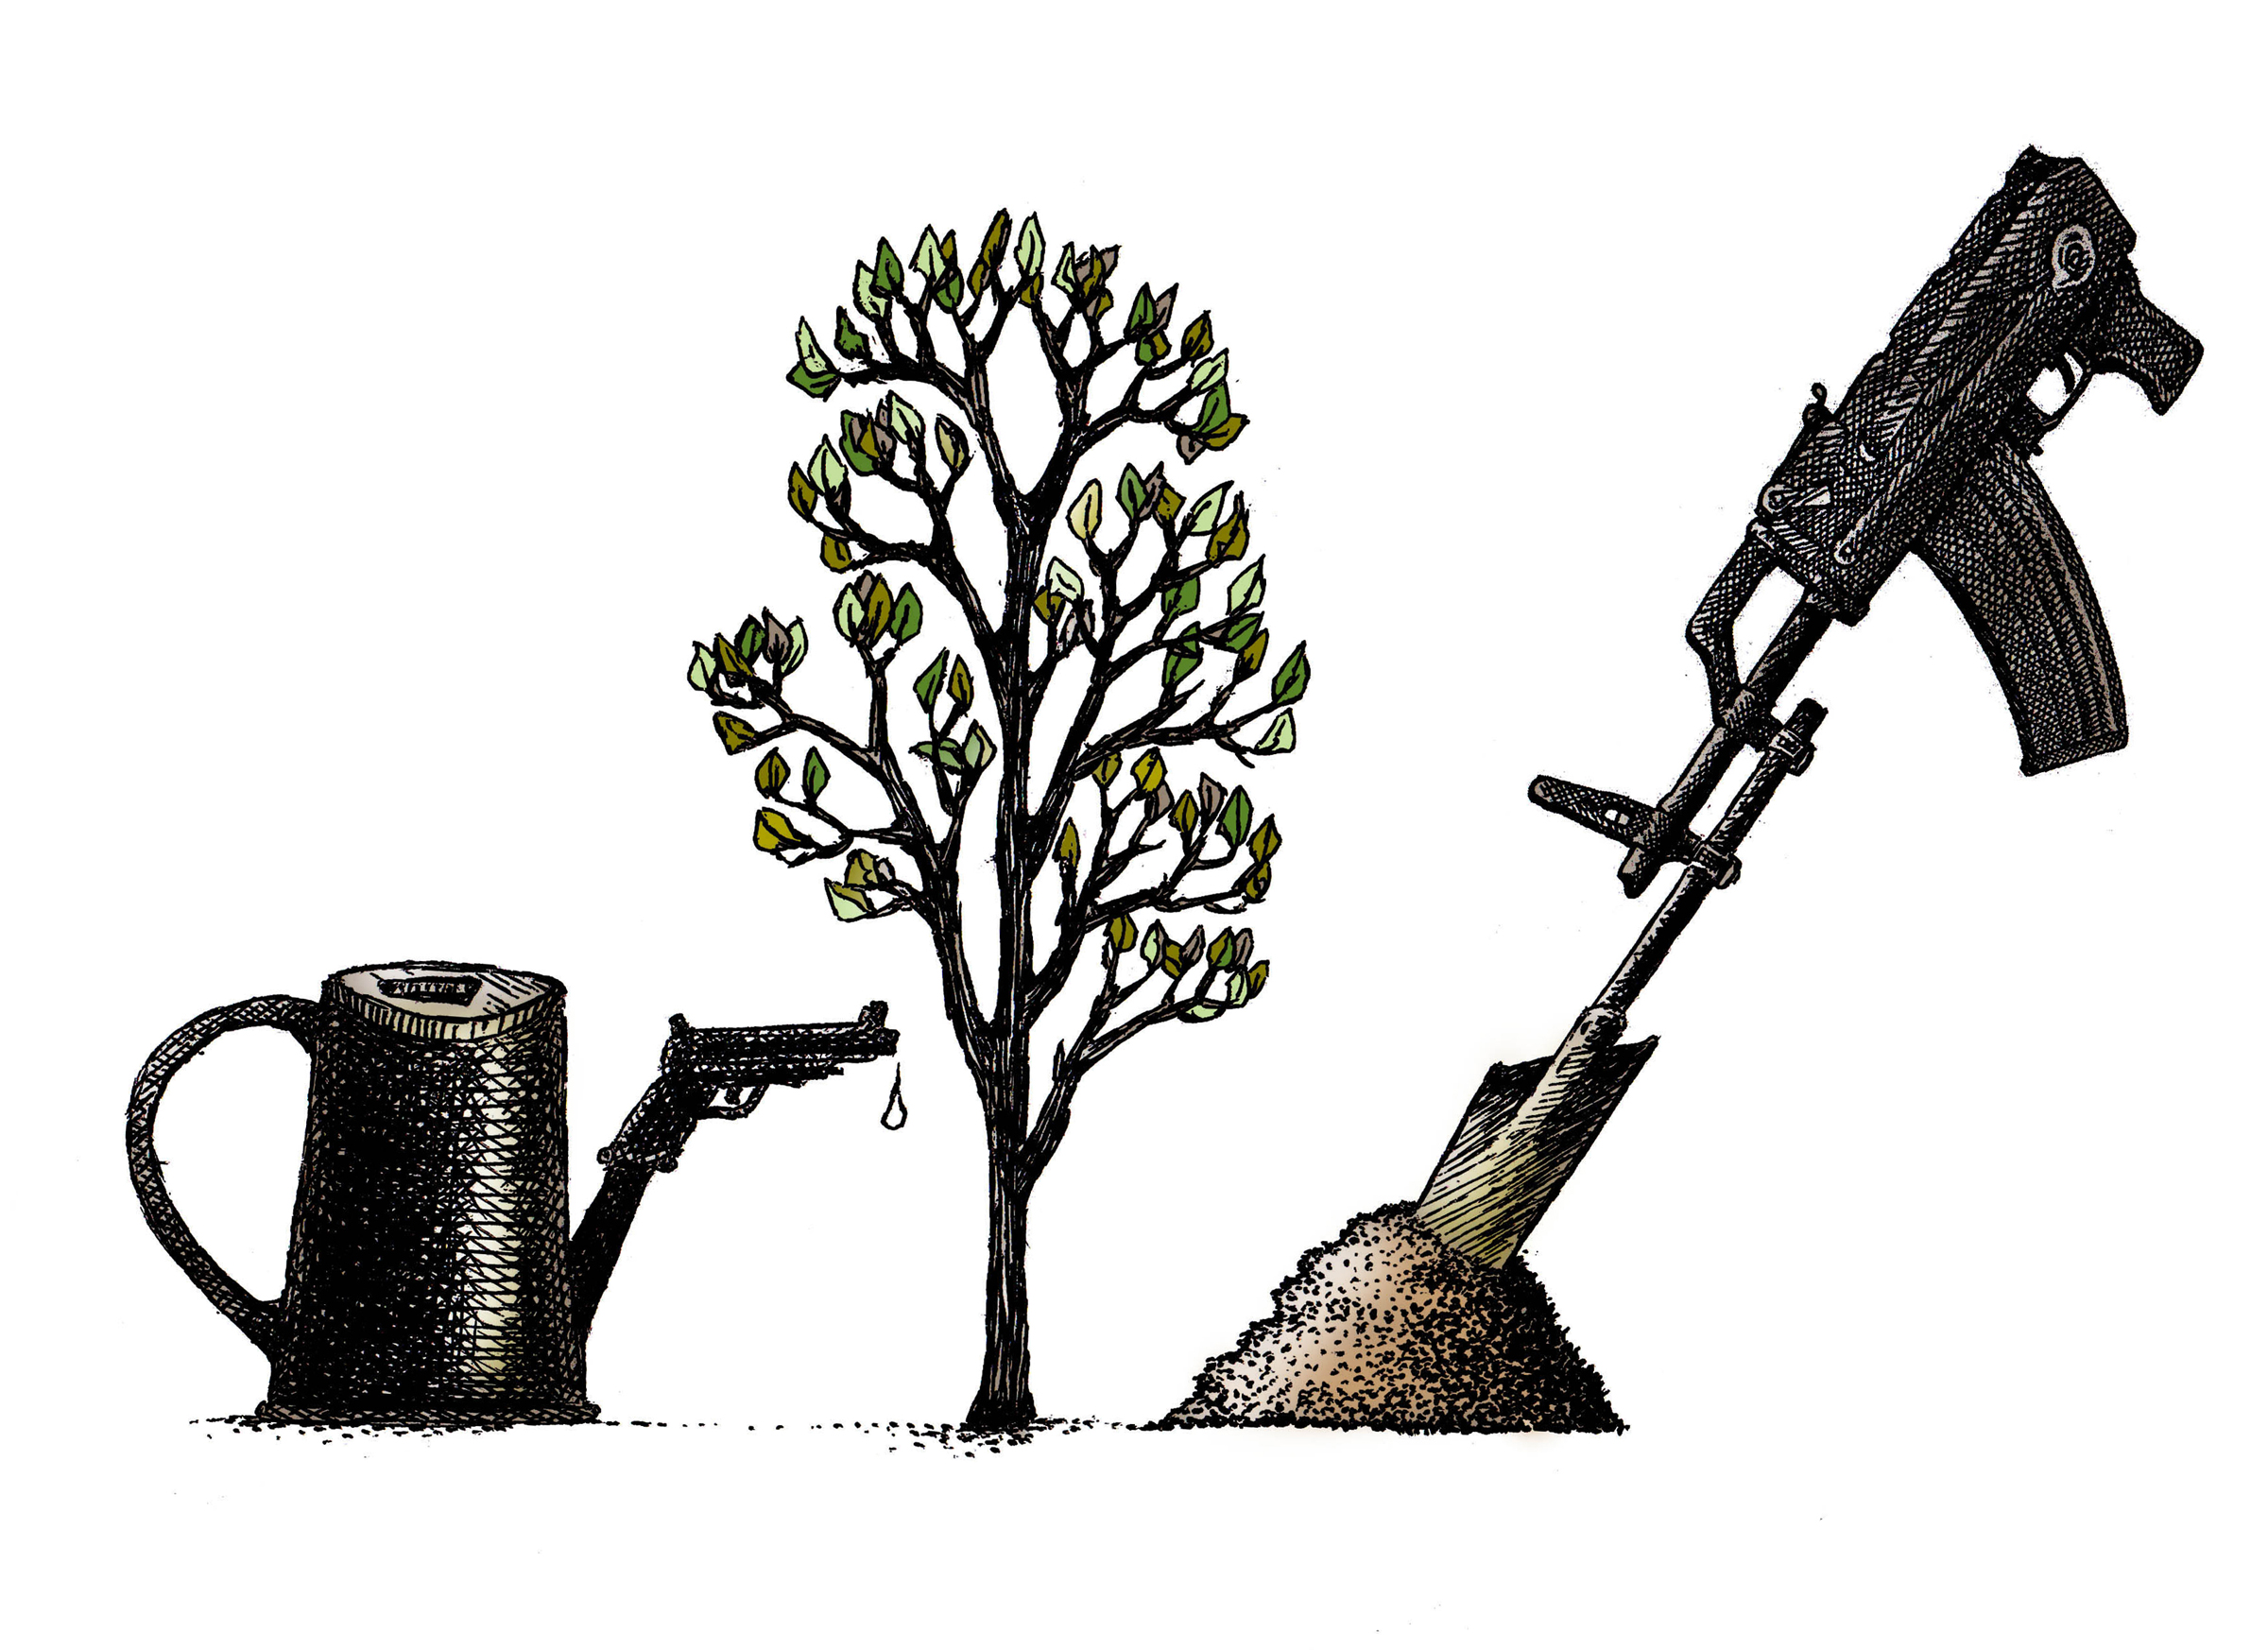 Les arbres, victimes collatérales des conflits